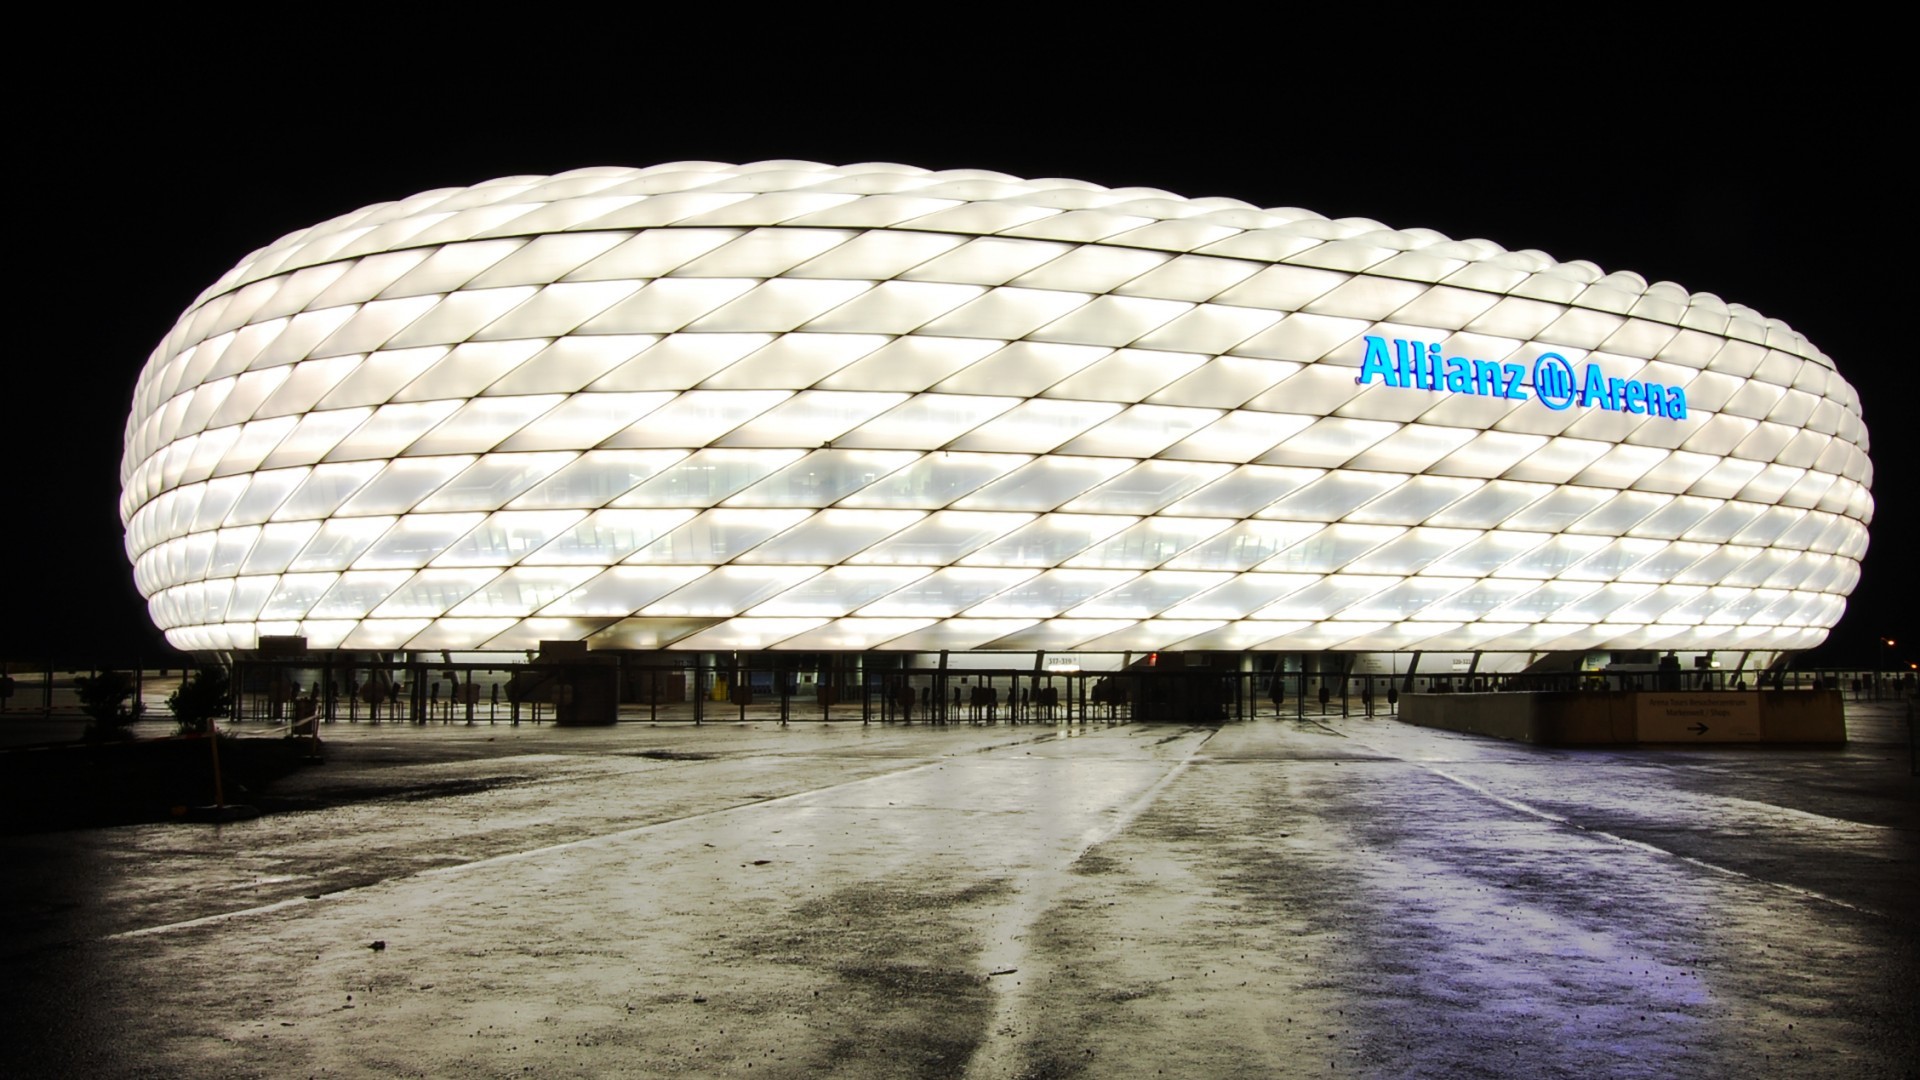 1920x1080 Allianz Arena Stadium Munich Wallpaper - Football Wallpapers HD